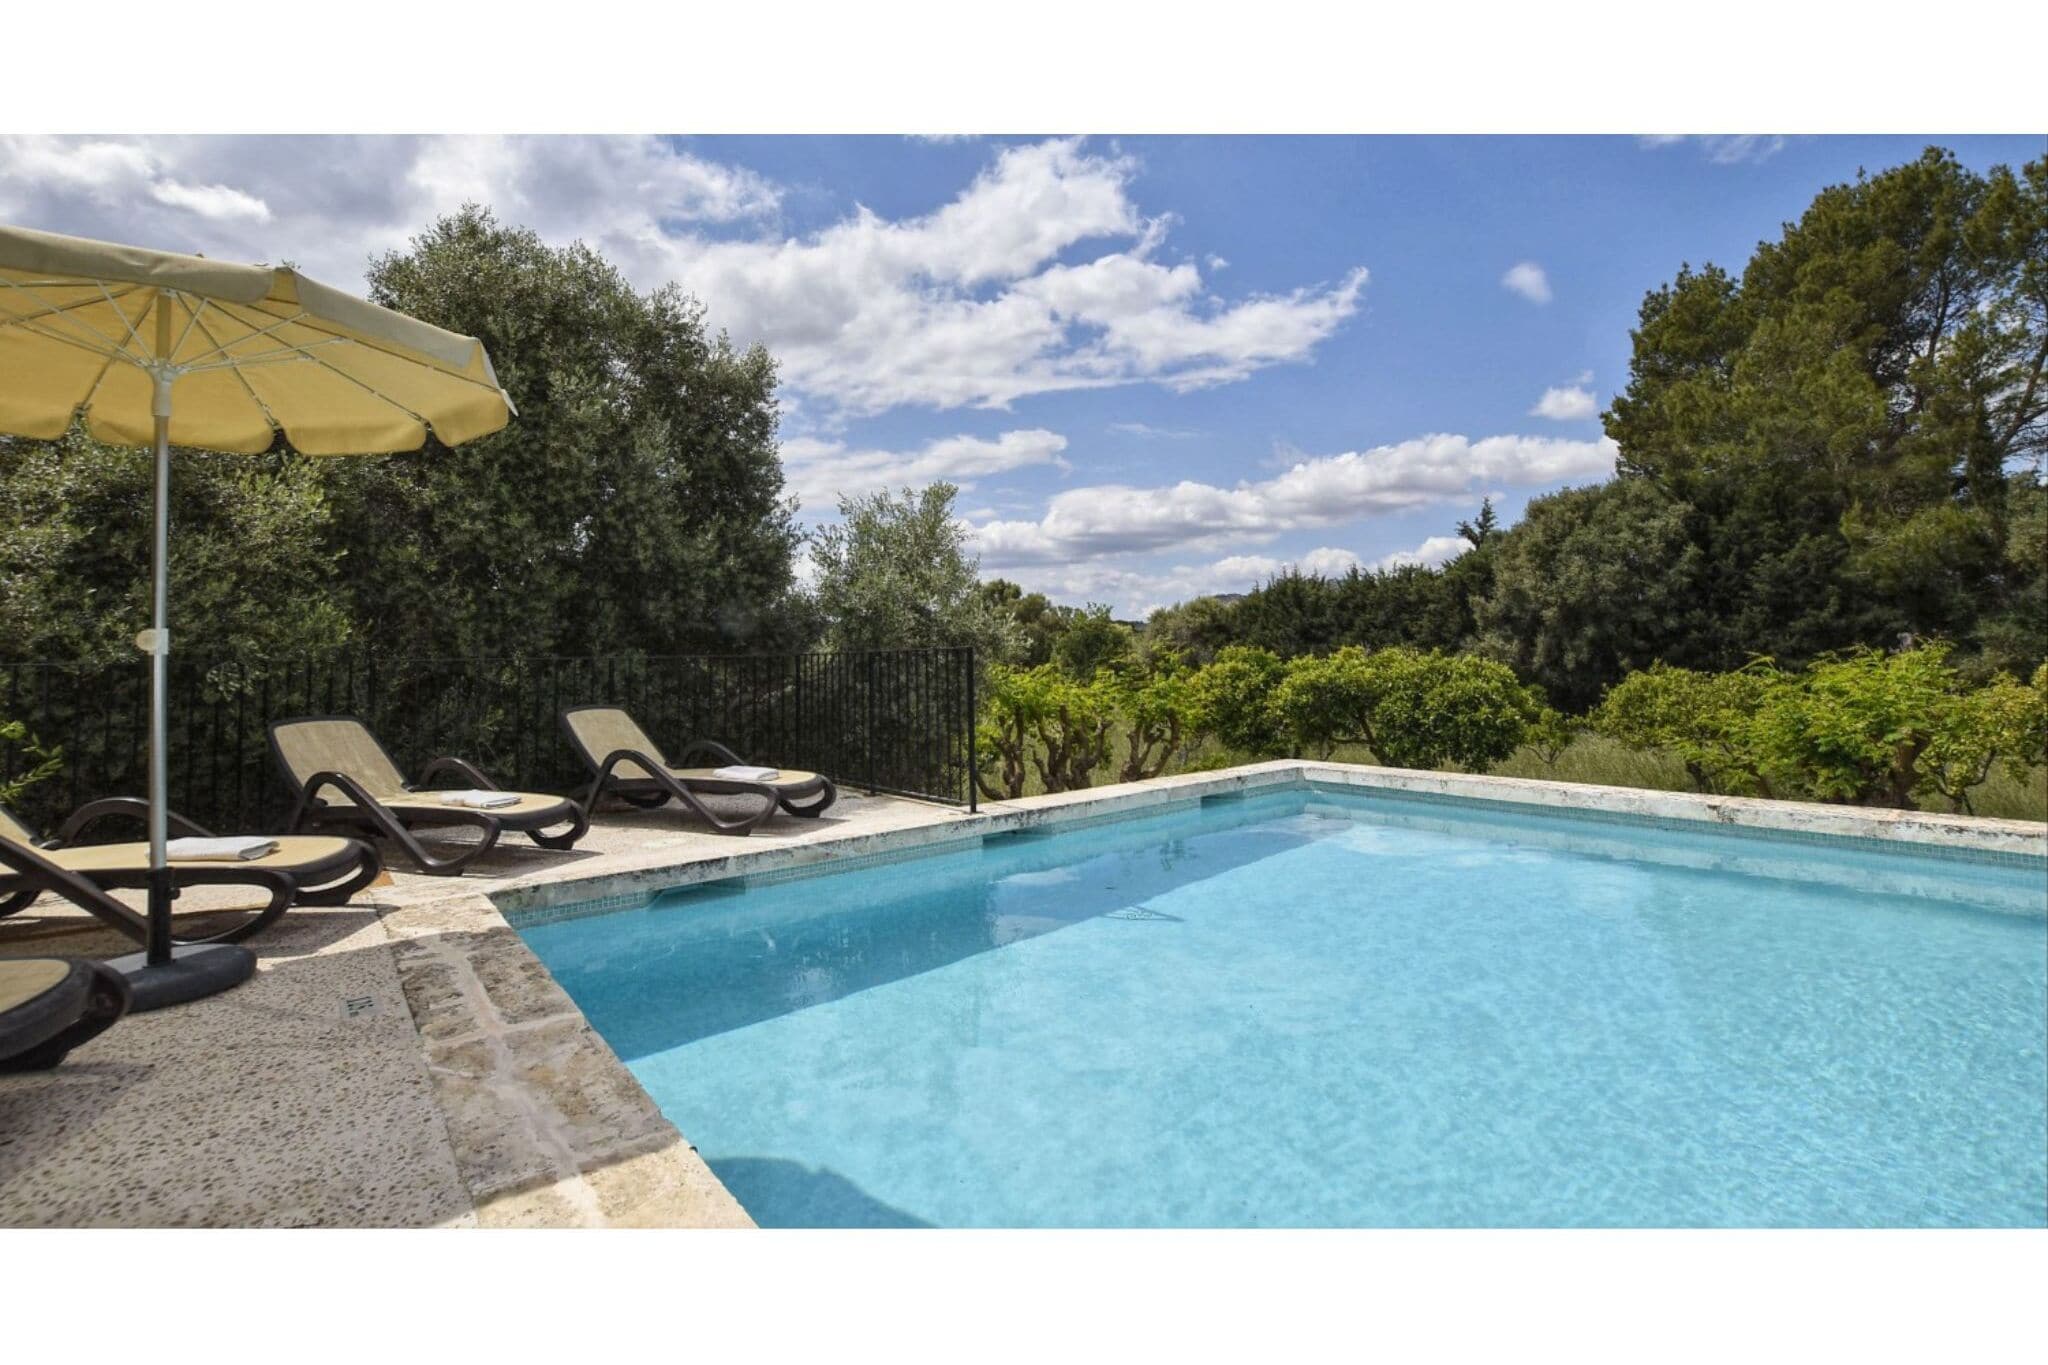 Mooi landhuis op Mallorca met groot prive zwembad totale privacy